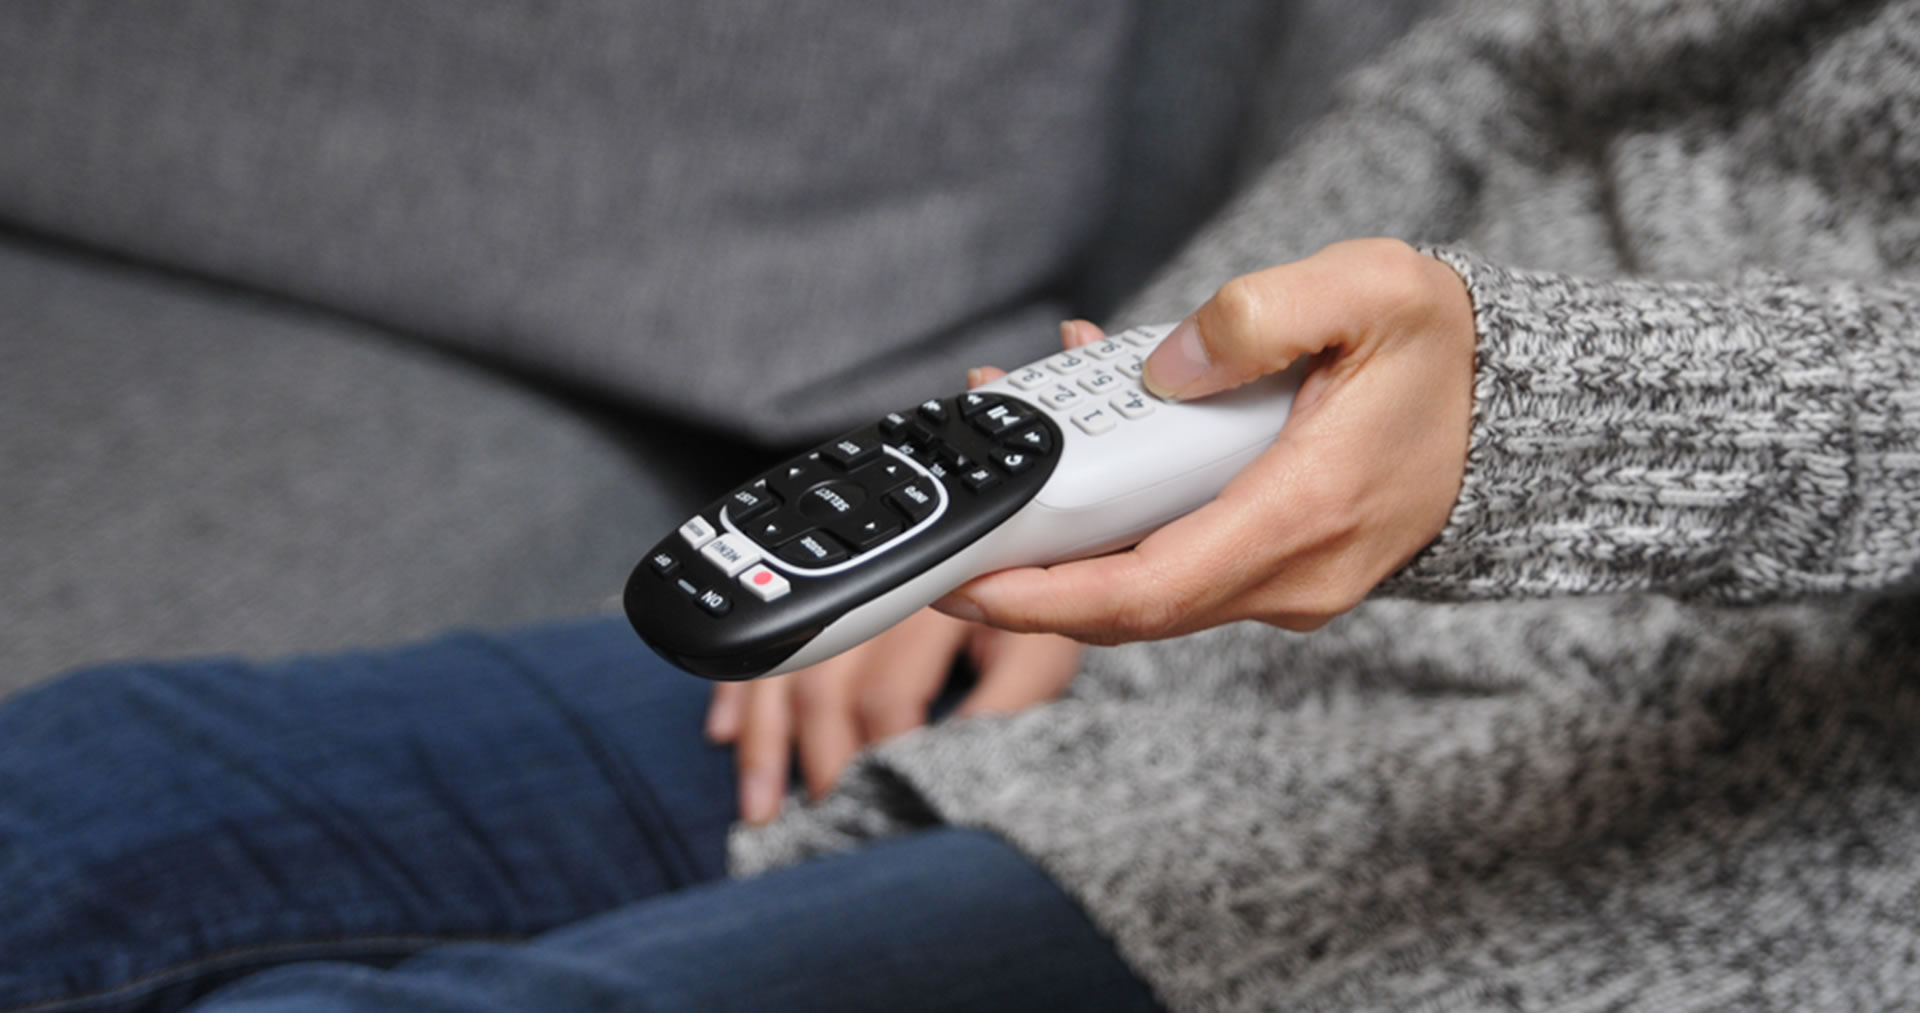 DirecTv remote control in hand